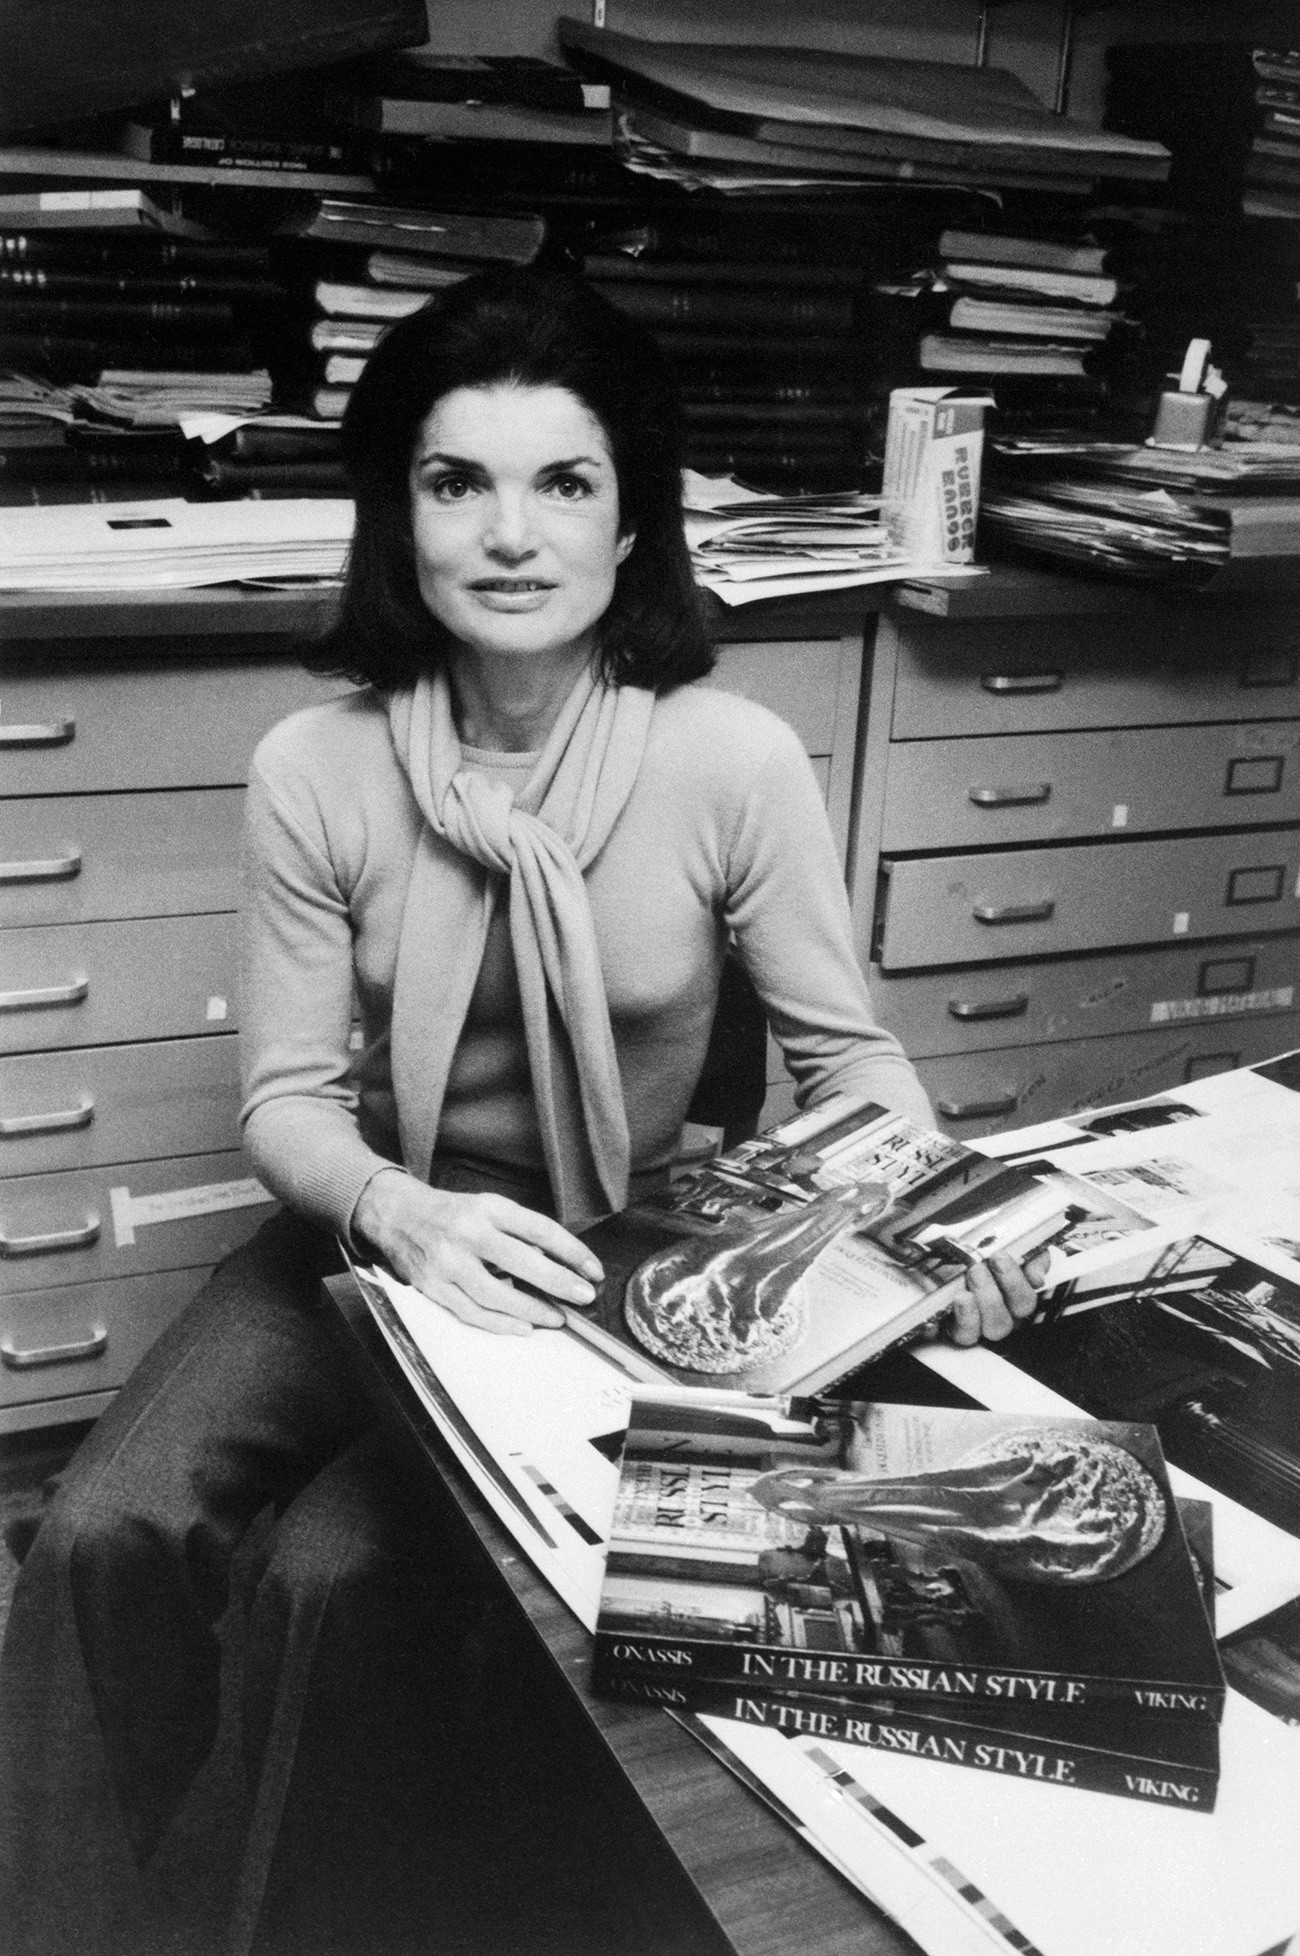 Жаклин Онассис в офисе издательства Viking Press представляет свою книгу «В русском стиле», 1976